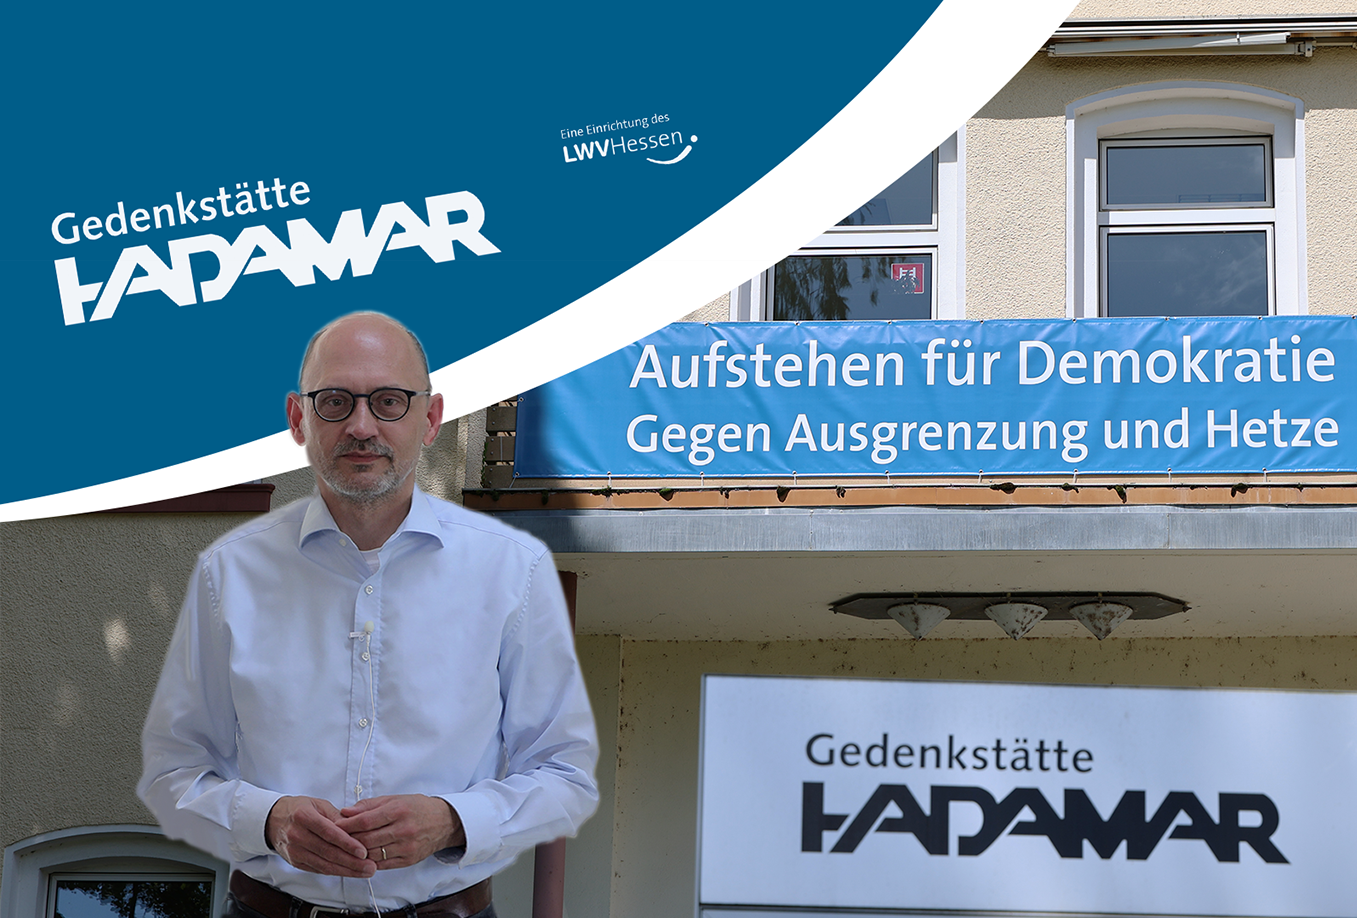 Der Leiter der Gedenkstätte Hadamar steht in einer Fotomontage vor dem Logo der Gedenkstätte und dem neuen Banner "Aufstehen für Demokratie", das im Anschnitt zu sehen ist.